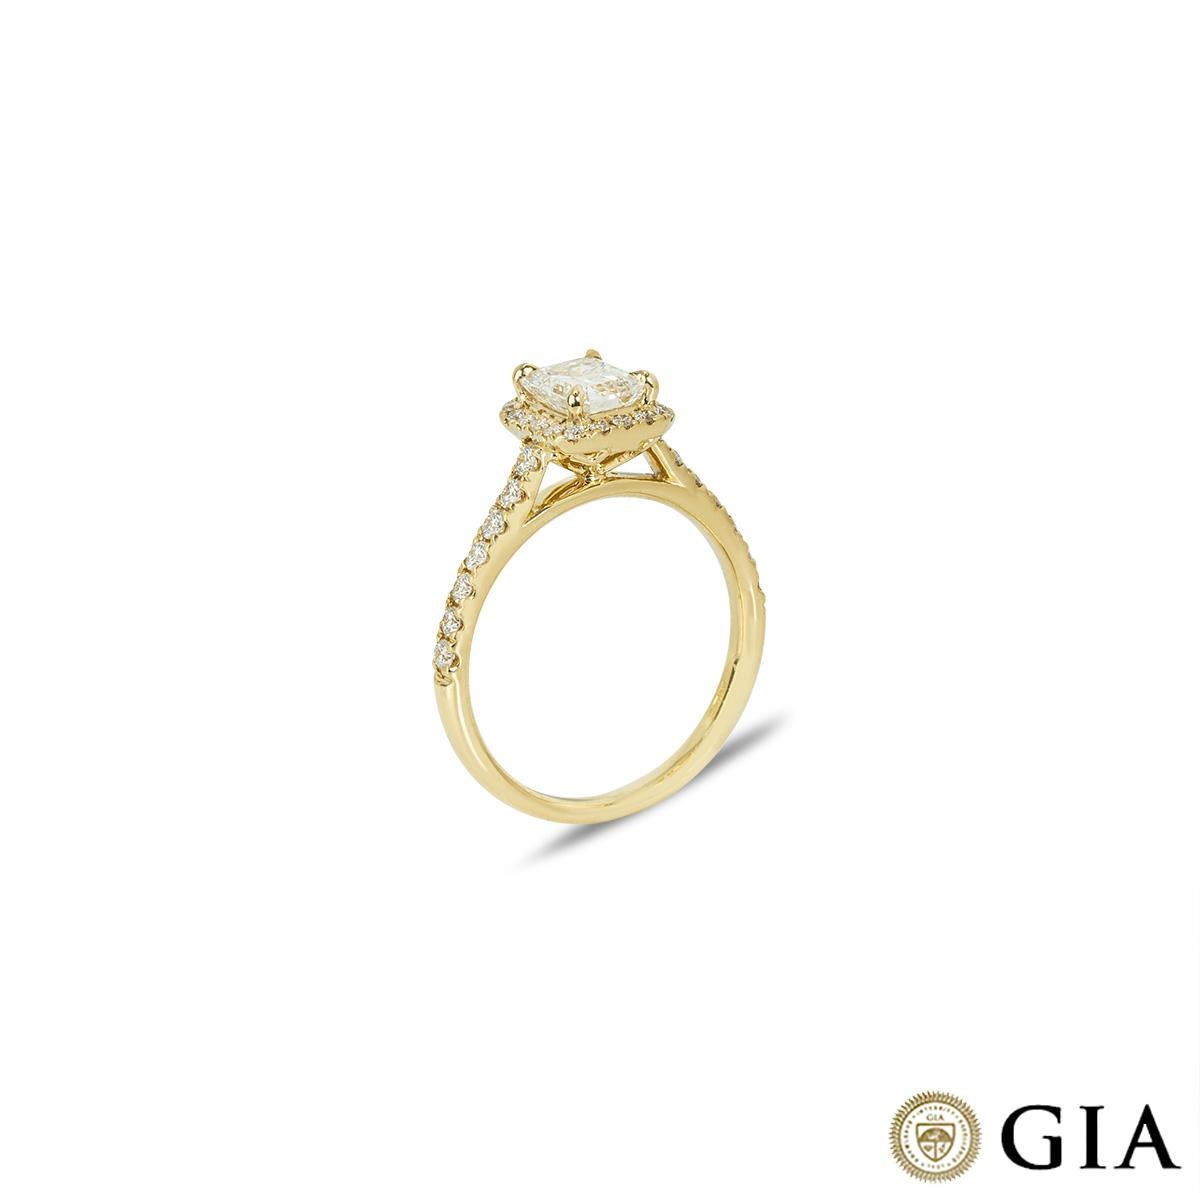 Ein wunderschöner Verlobungsring aus 18 Karat Gelbgold mit Diamanten. In der Mitte des Rings befindet sich ein Diamant im Smaragdschliff mit einem Gewicht von 0,95ct, Farbe F und Reinheit VVS1. Den zentralen Diamanten akzentuieren 32 runde Diamanten